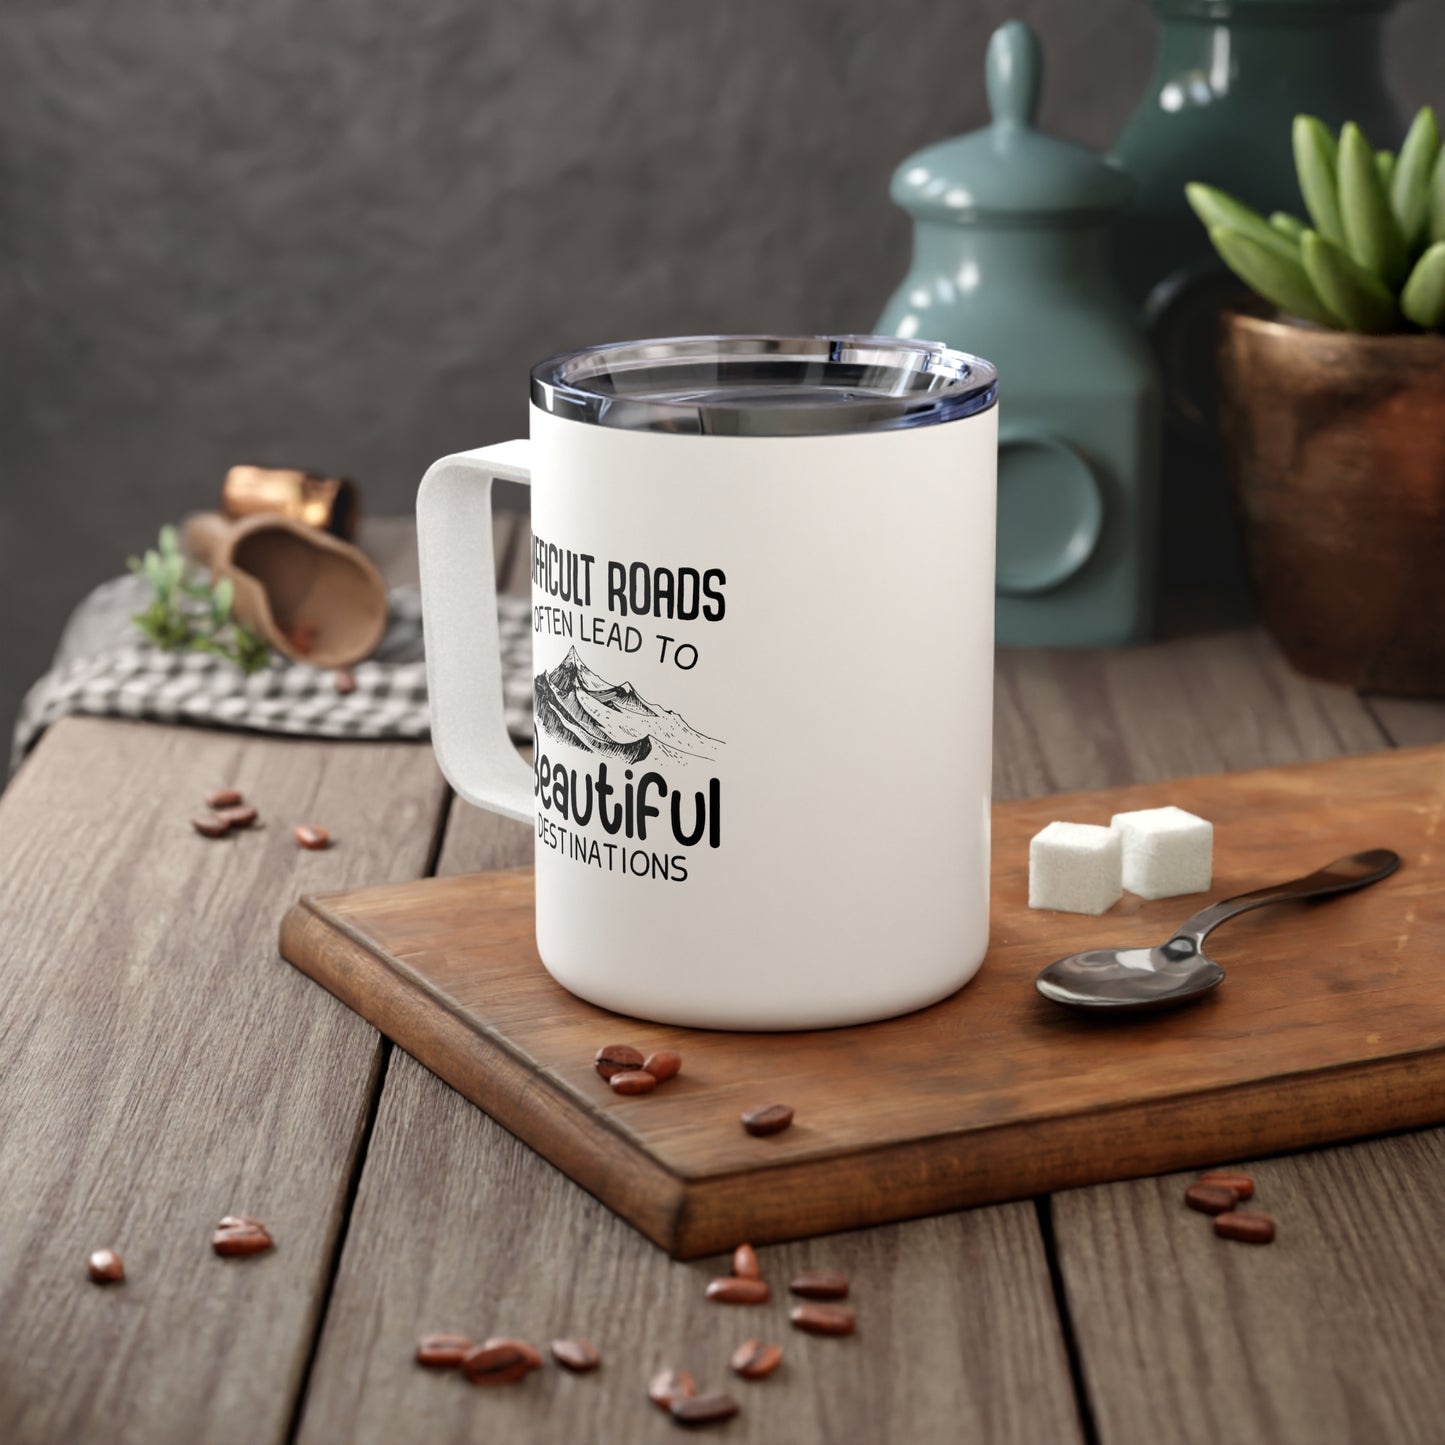 Difficult Roads Travel Insulated Coffee Mug, 10oz Motivational Mug